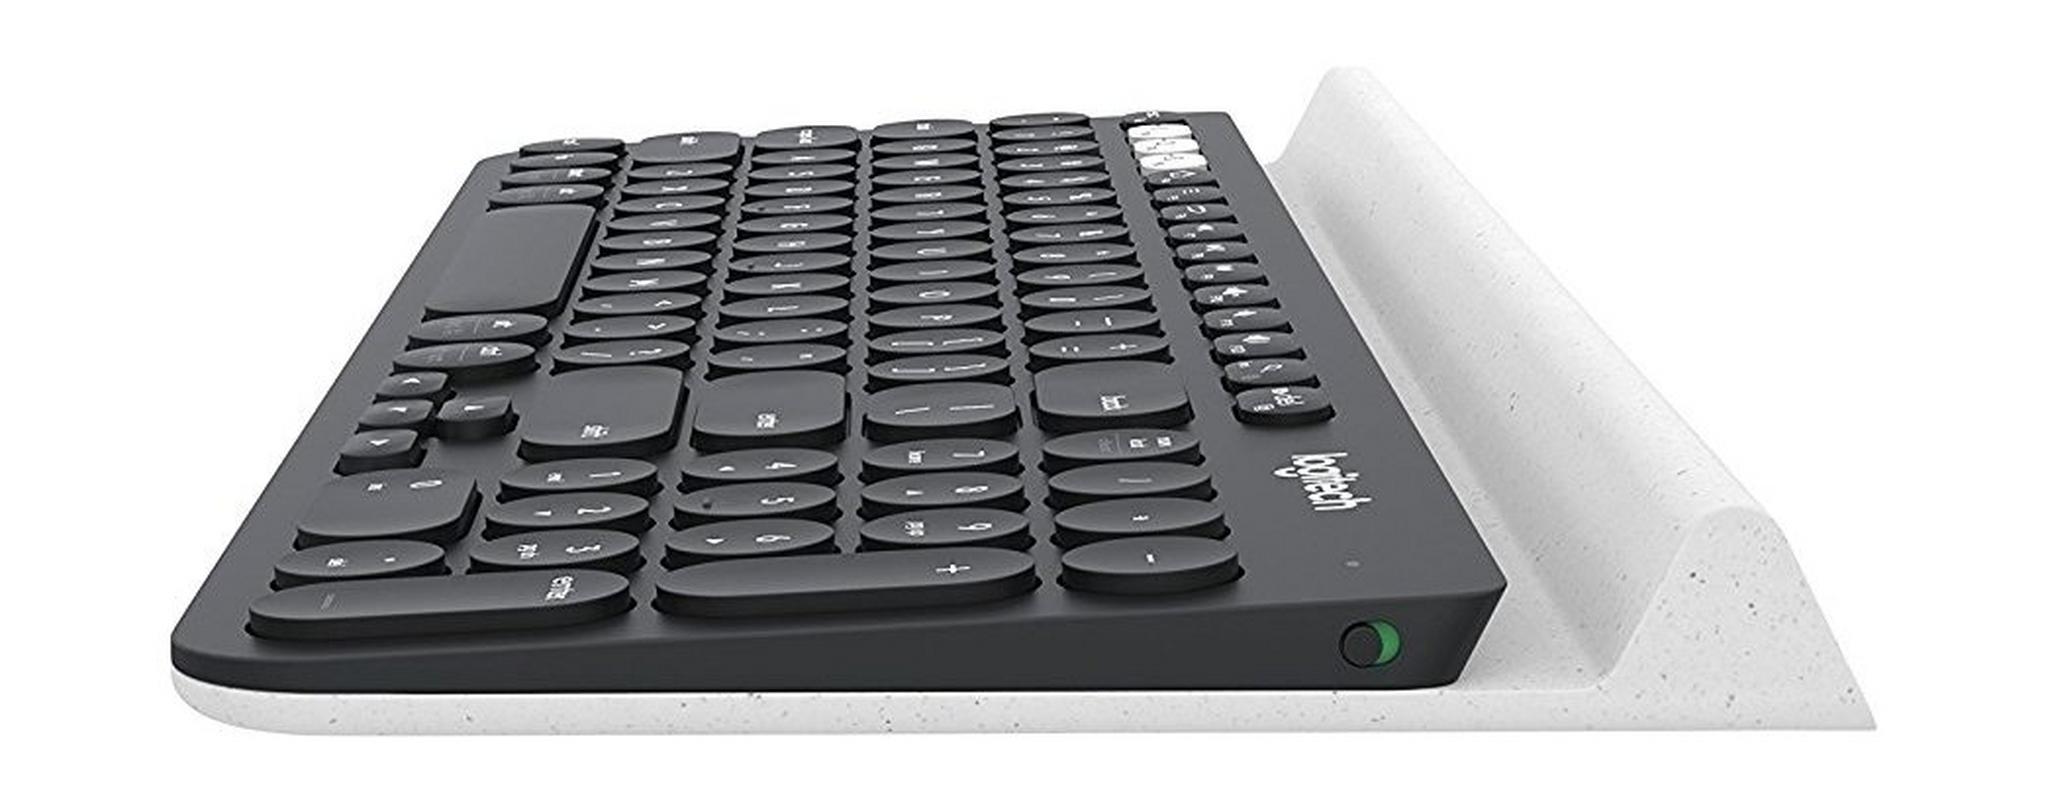 لوحة مفاتيح لاسلكية كي ٧٨٠ متعددة الأجهزة من لوجيتك - (920-008042)